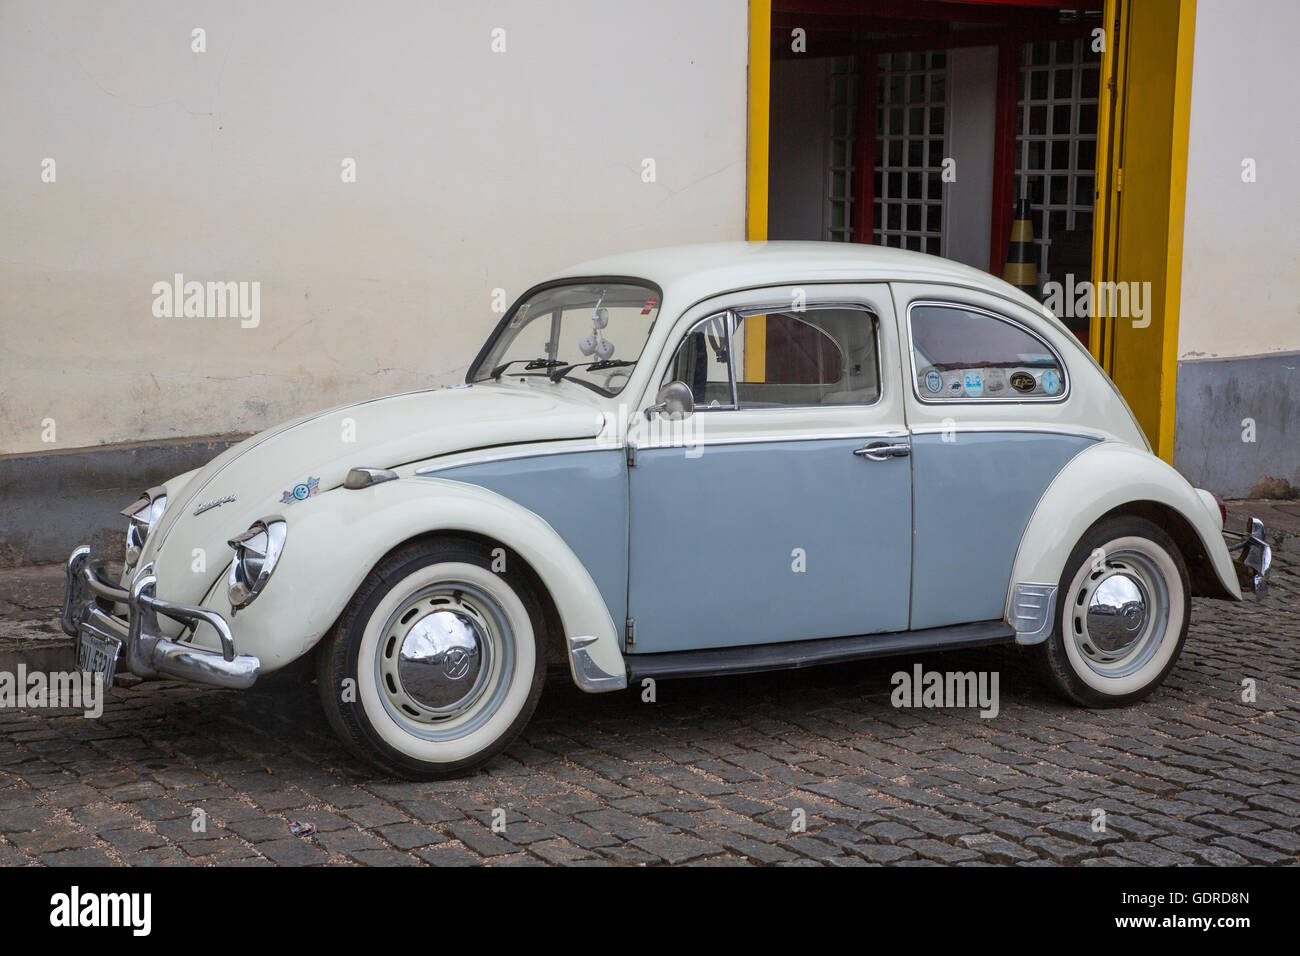 Brasilian built Volkswagen Fusca (VW Beetle), Ouro Preto, Minas Gerais, Brazil Stock Photo